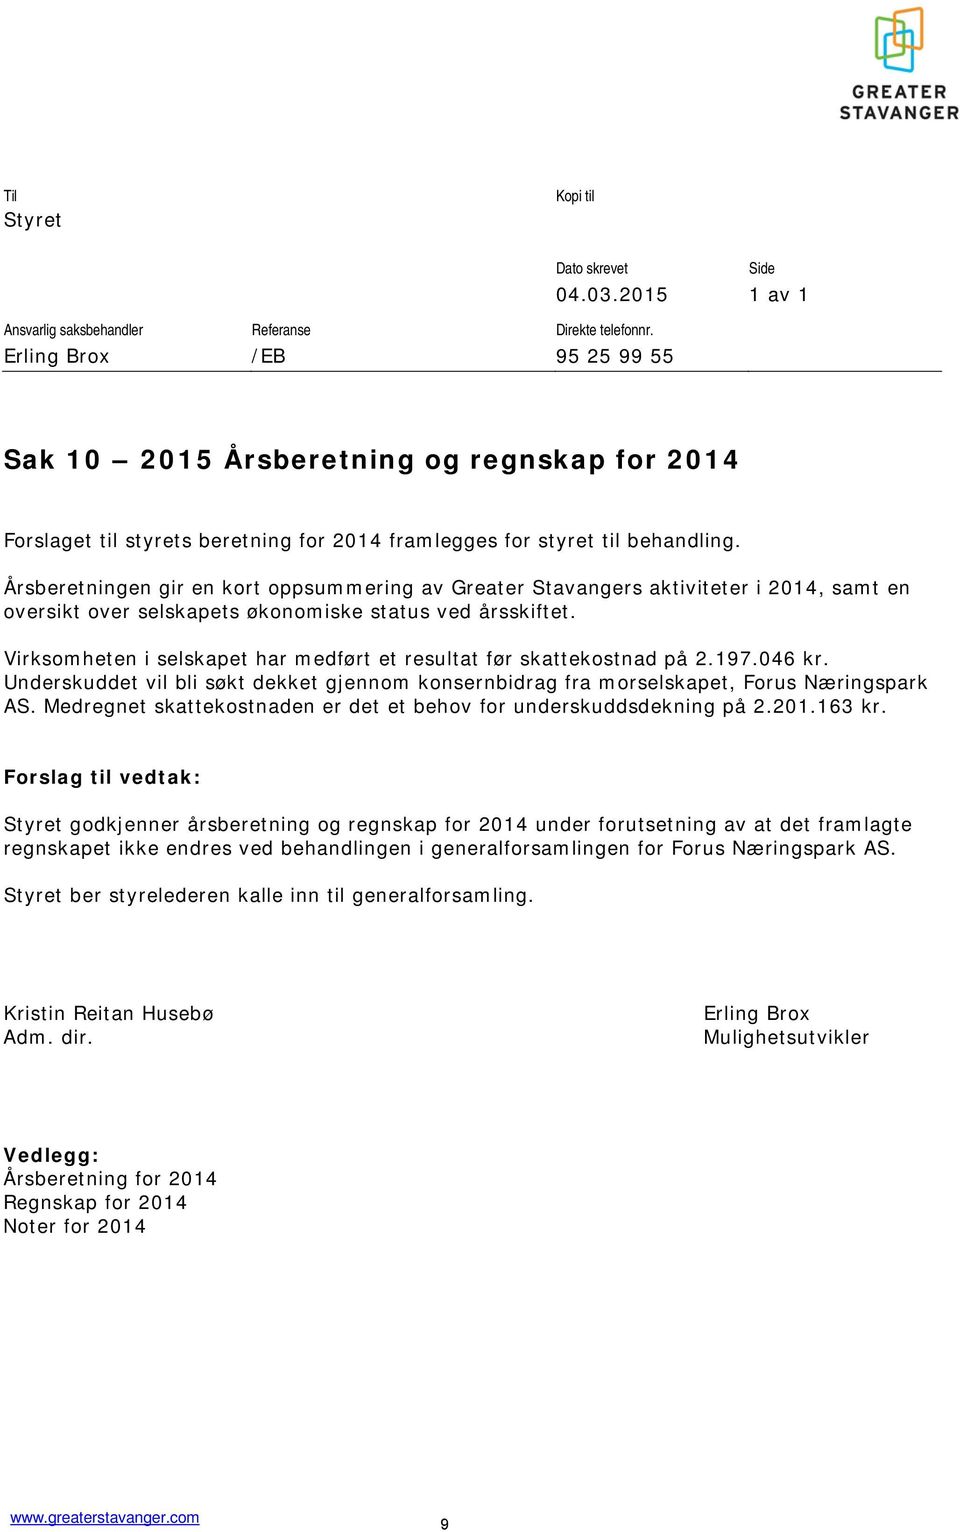 Årsberetningen gir en kort oppsummering av Greater Stavangers aktiviteter i 2014, samt en oversikt over selskapets økonomiske status ved årsskiftet.